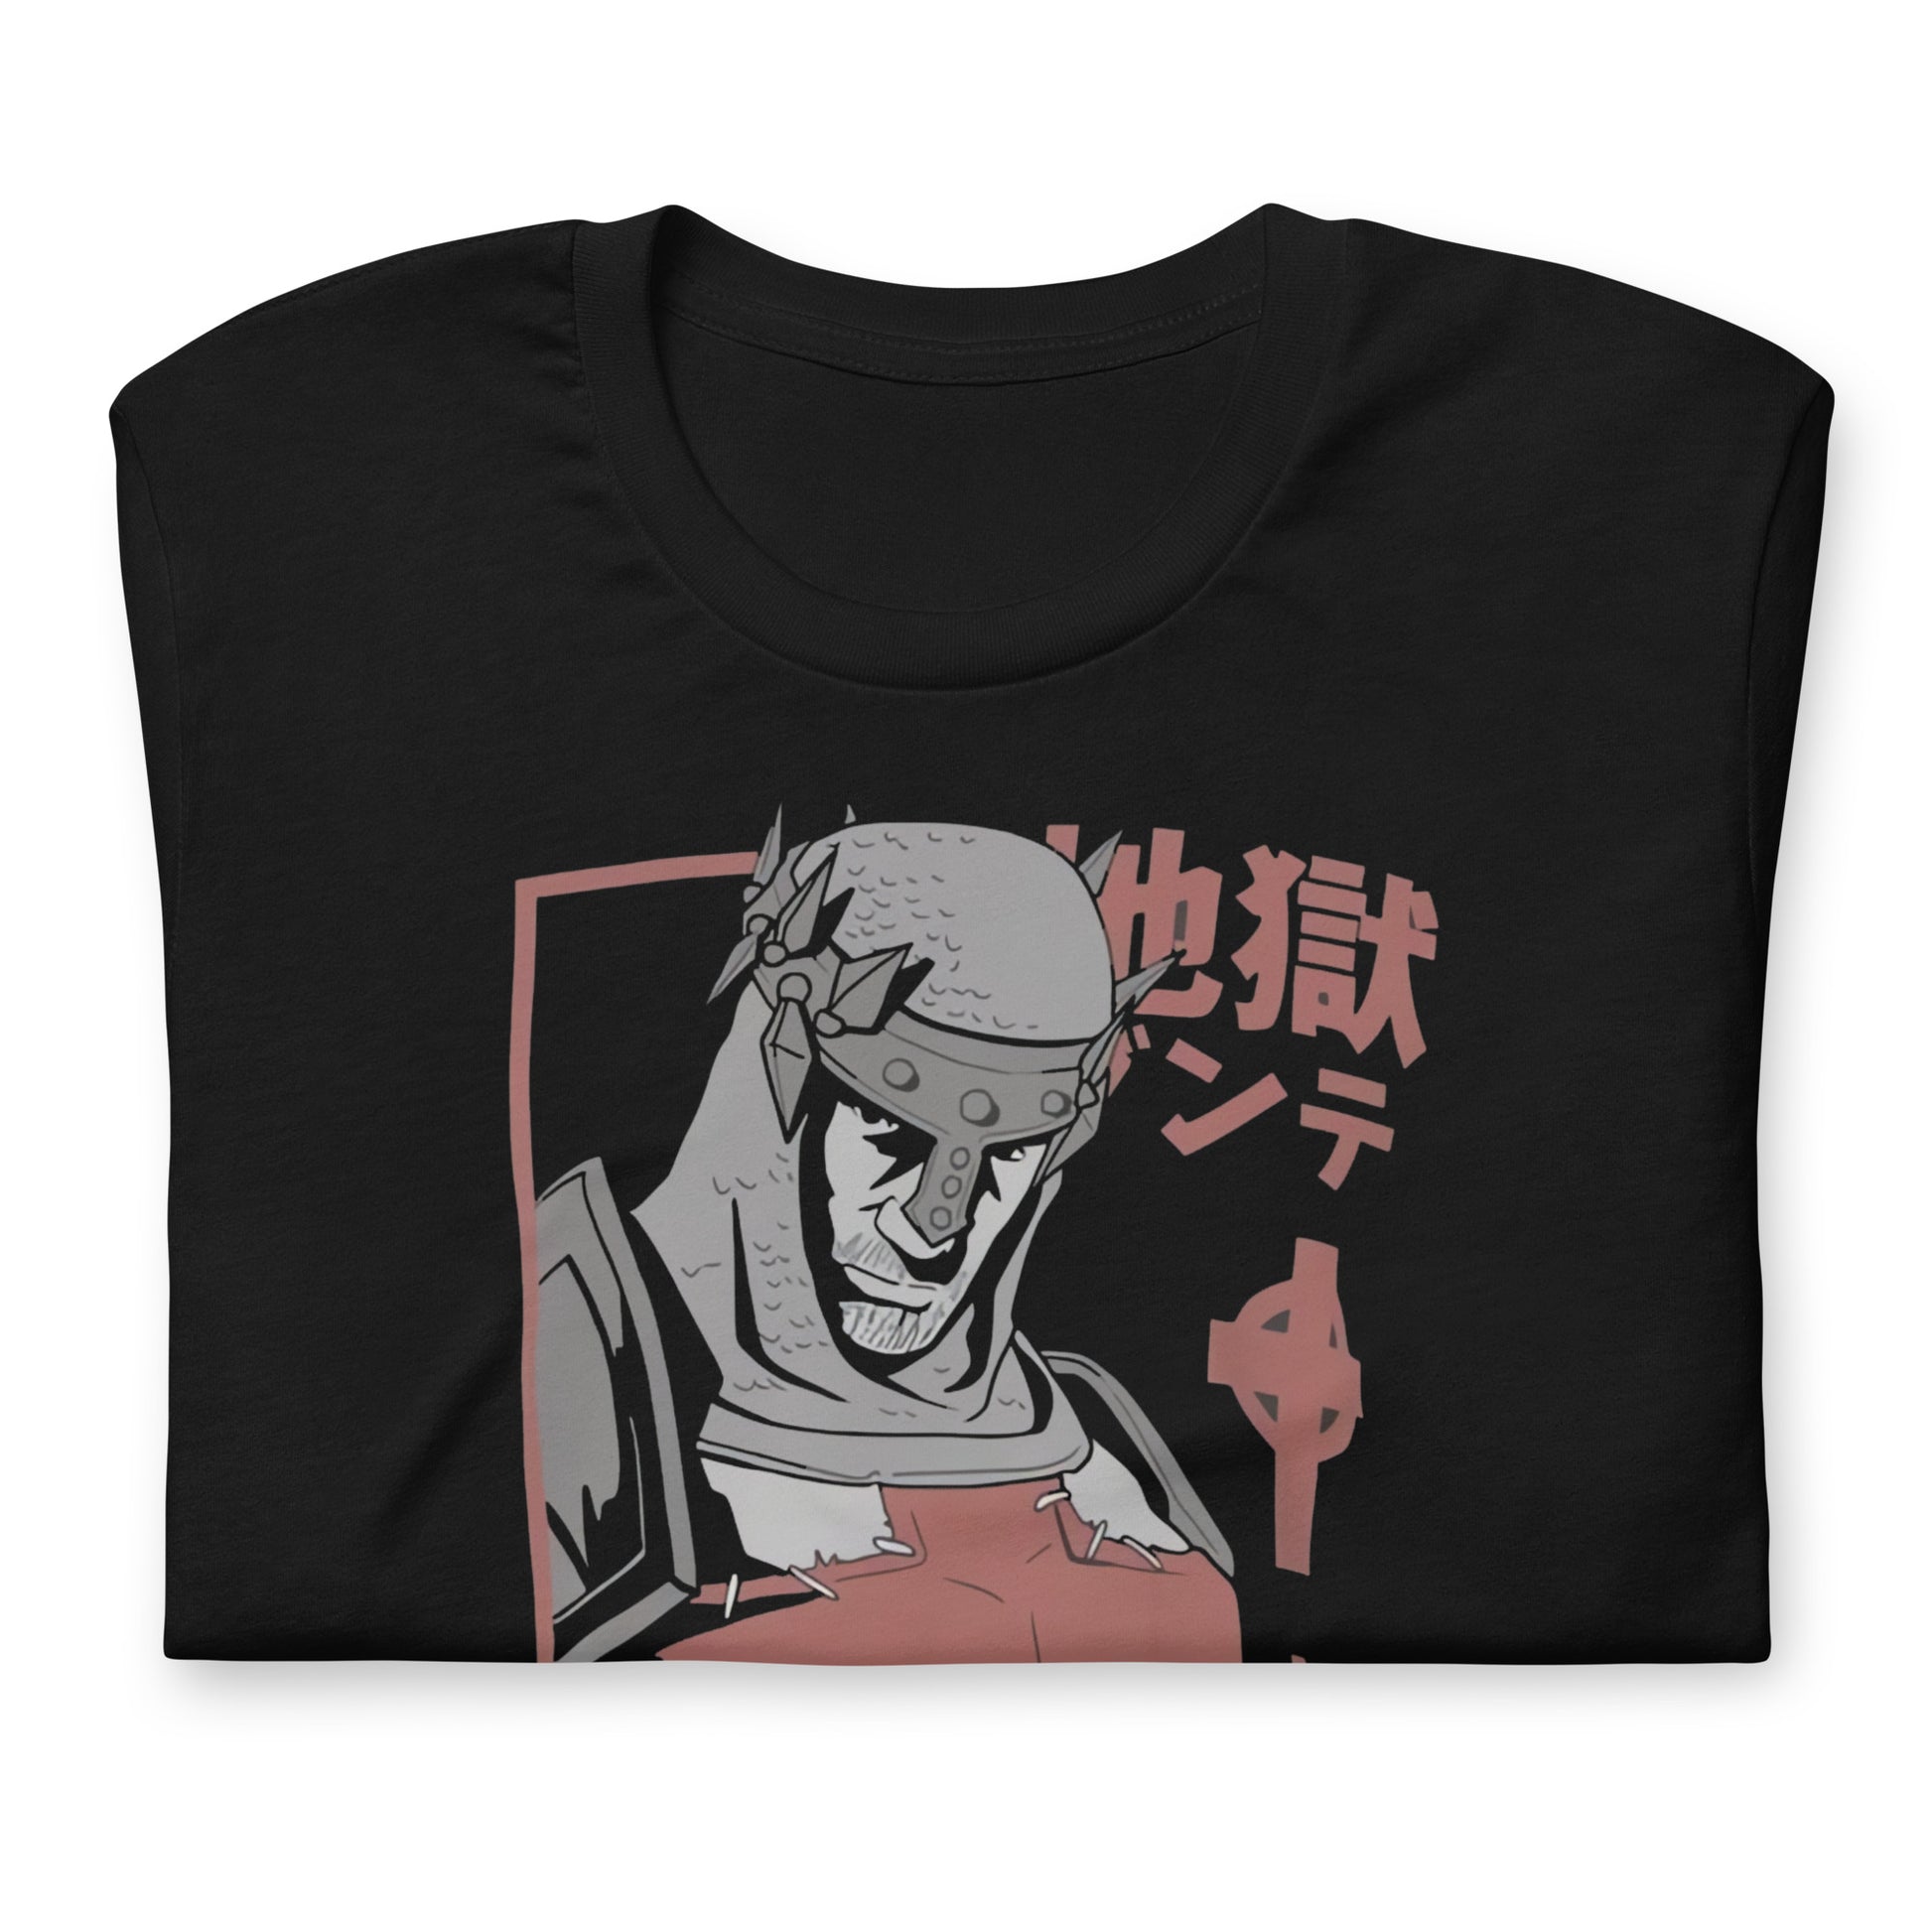 ¡Compra el mejor merchandising en Superstar! Encuentra diseños únicos y de alta calidad en camisetas únicas, Camiseta Infierno de Dante Jap